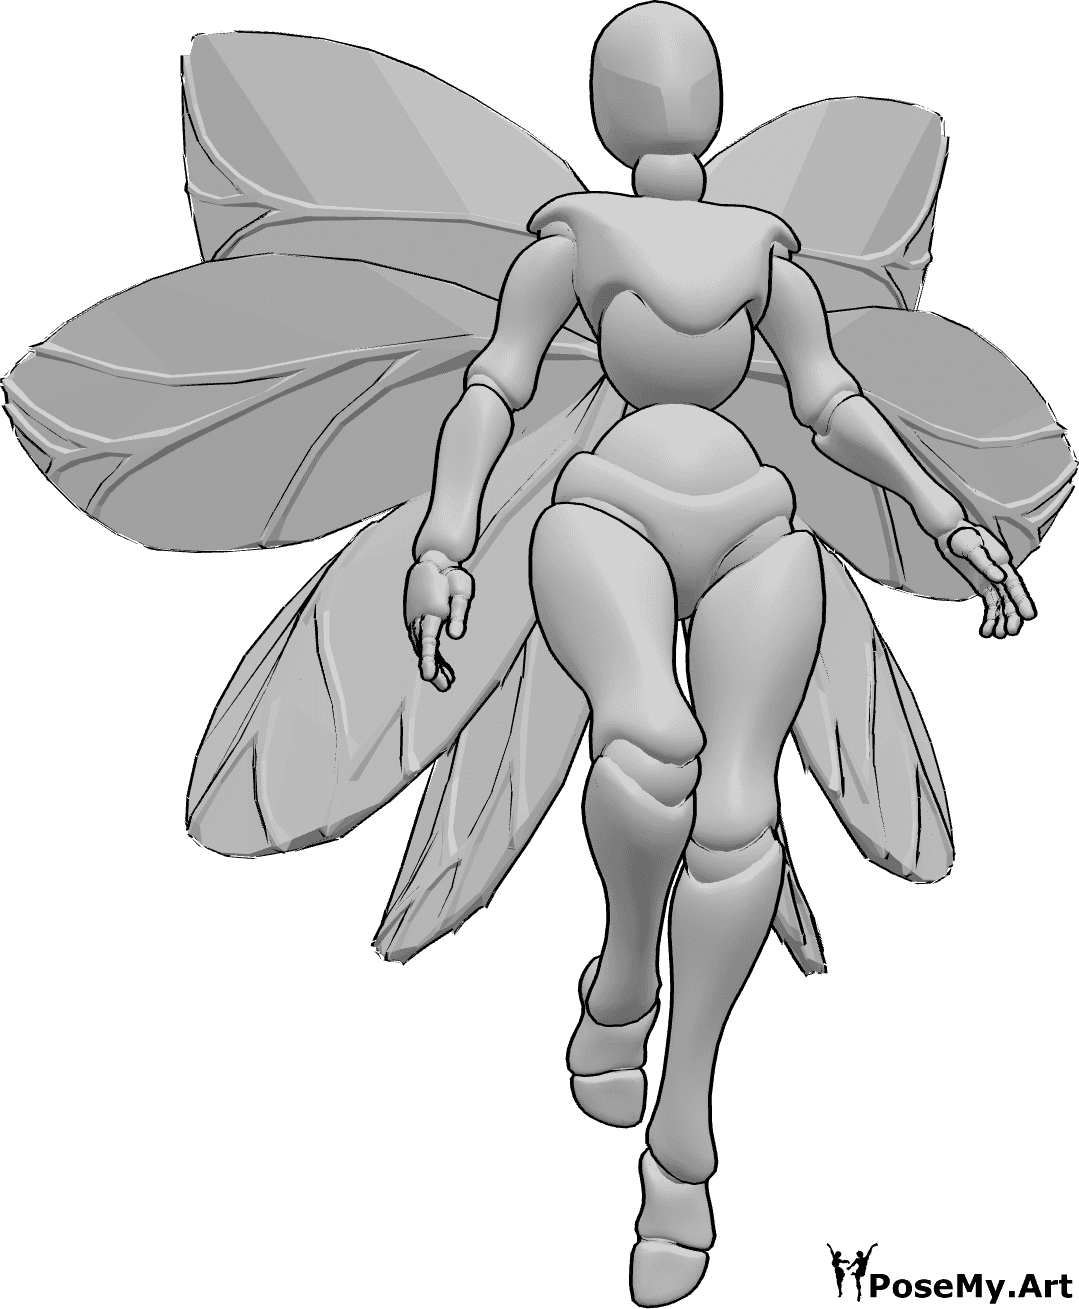 Referencia de poses- Postura con alas de hada - Mujer con alas de hada está flotando en el aire, mirando hacia adelante, alas de referencia